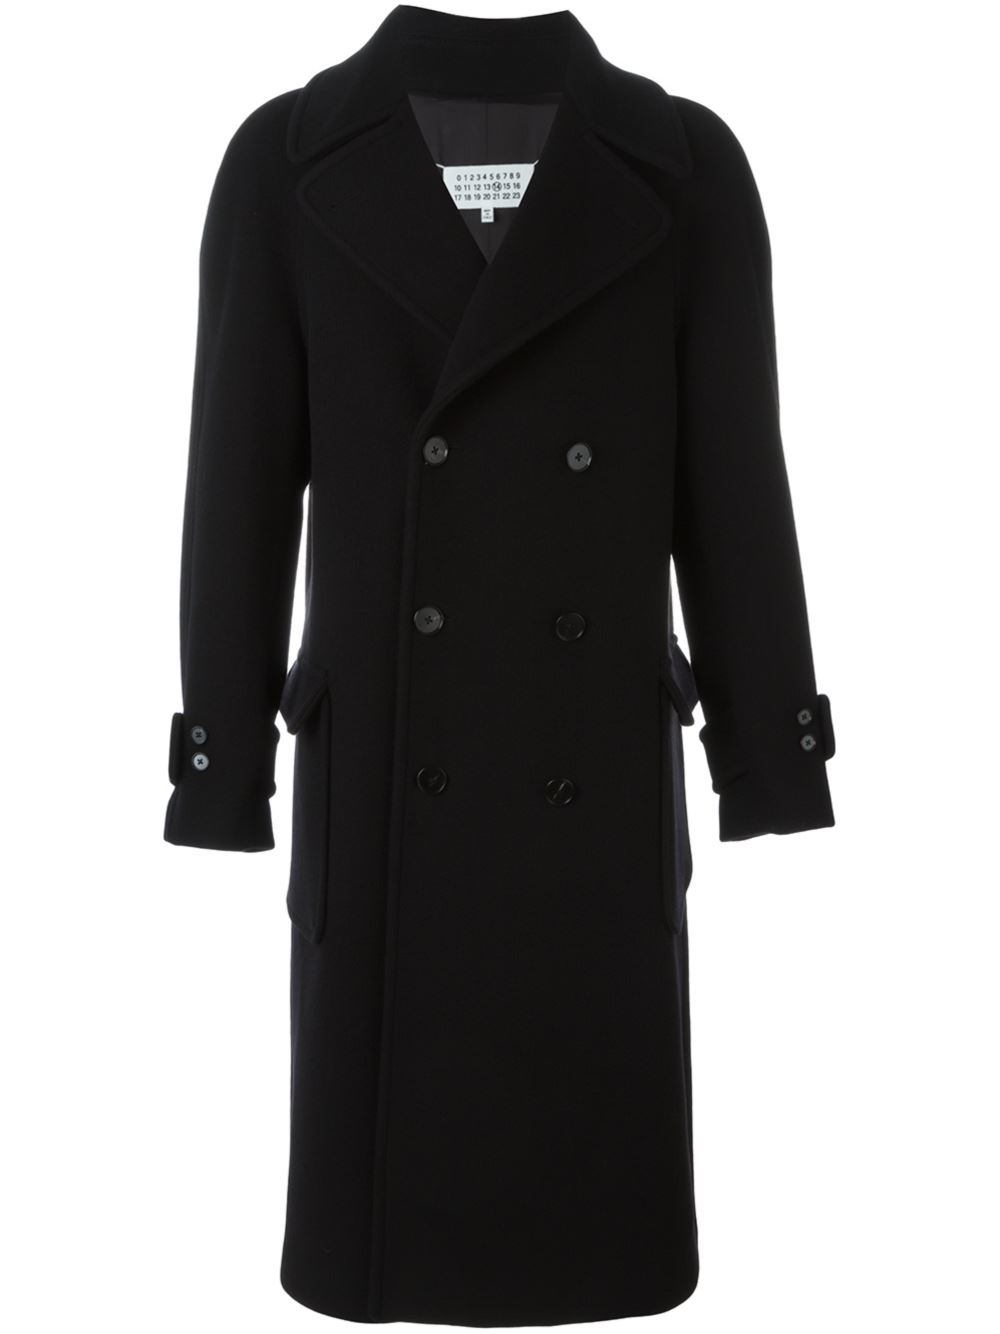 Lyst - Maison Margiela Long Length Pea Coat in Black for Men